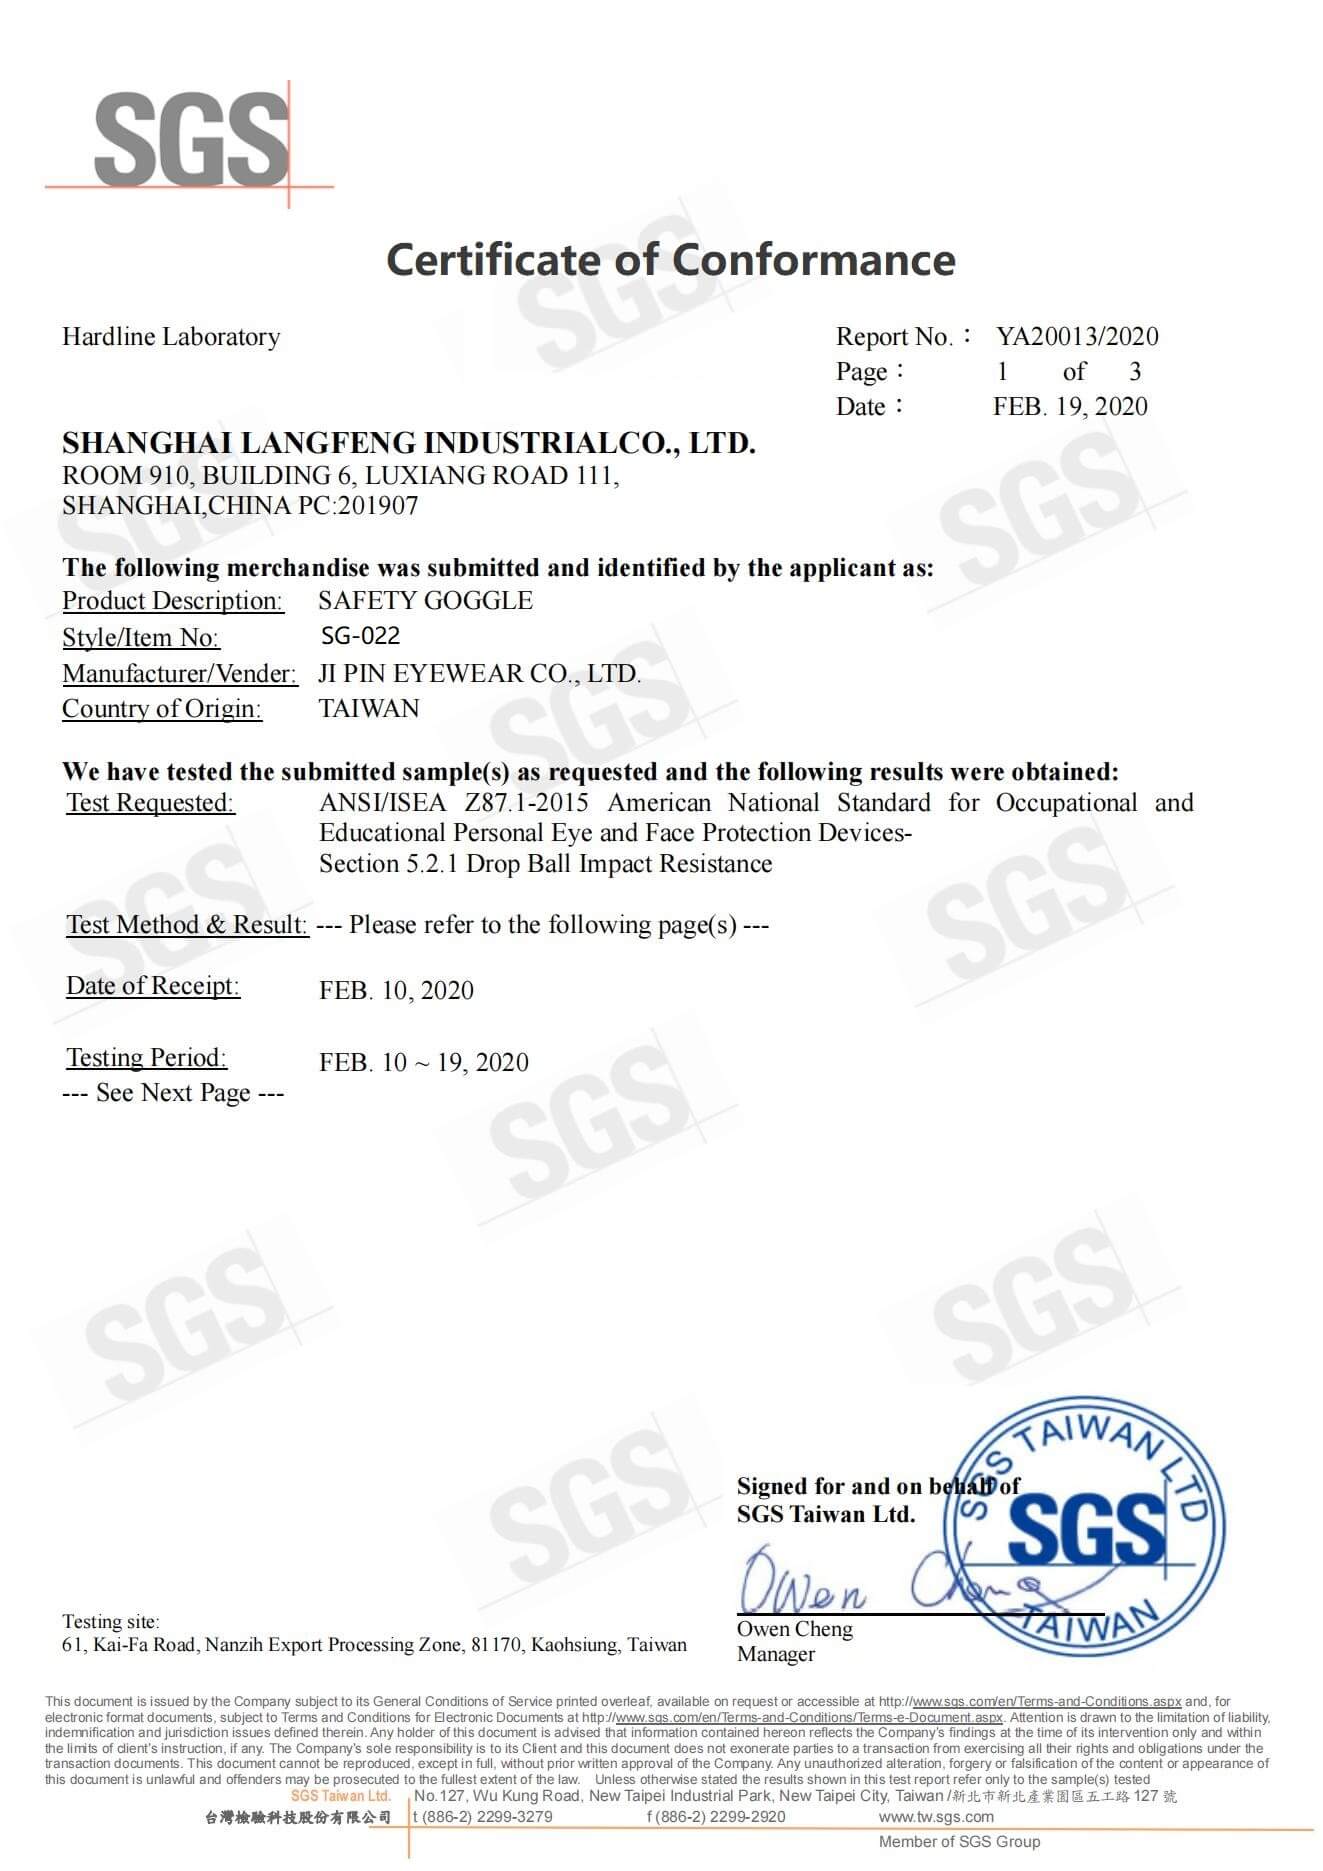 SG022美标ANSI测试证书 正本_00